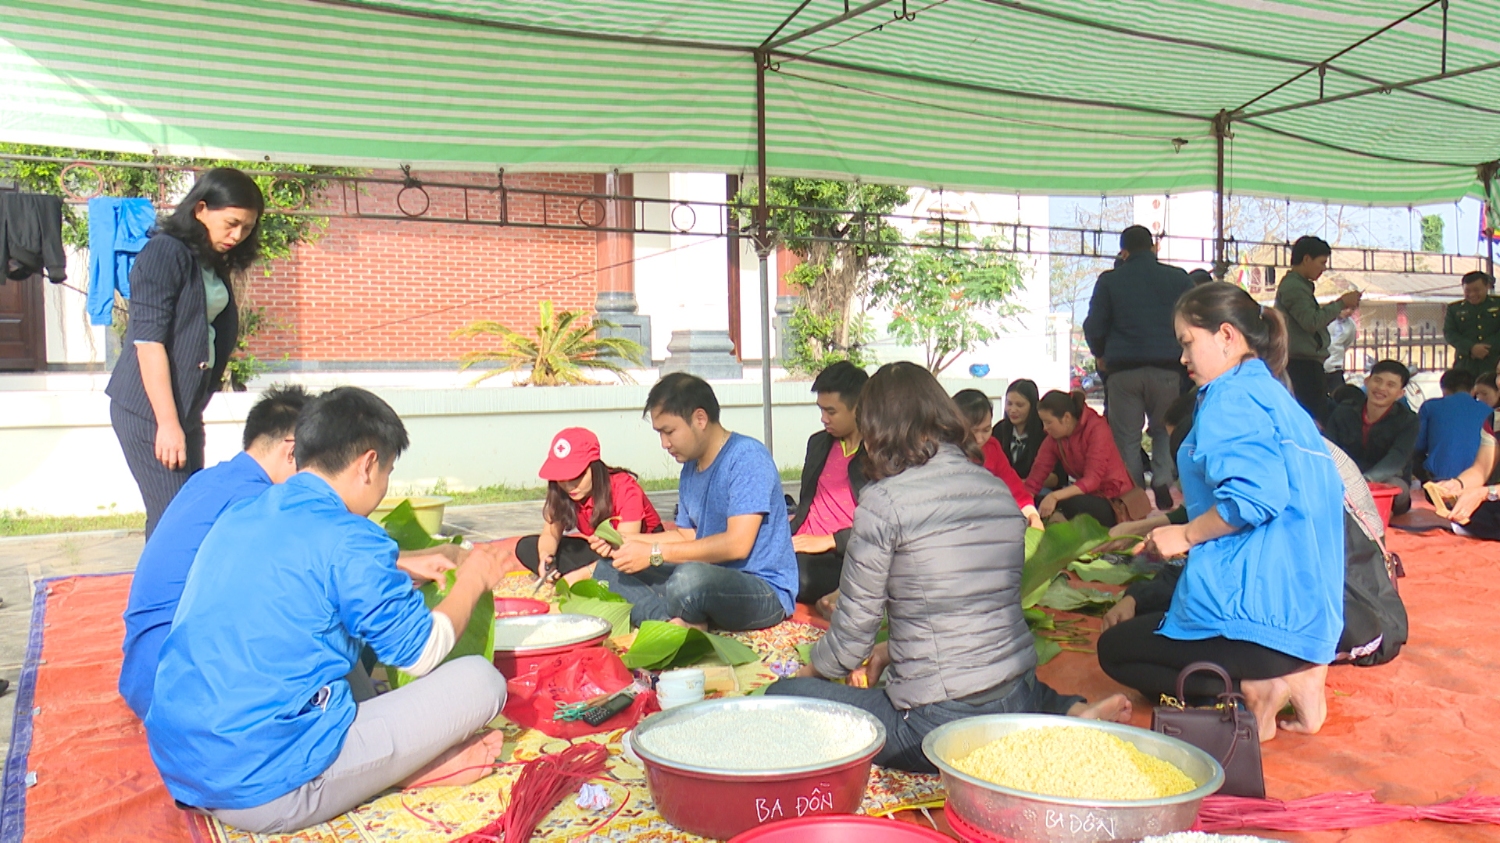 Thị xã Ba Đồn tổ chức ngày hội "Bánh chưng xanh vì người nghèo" năm 2019.